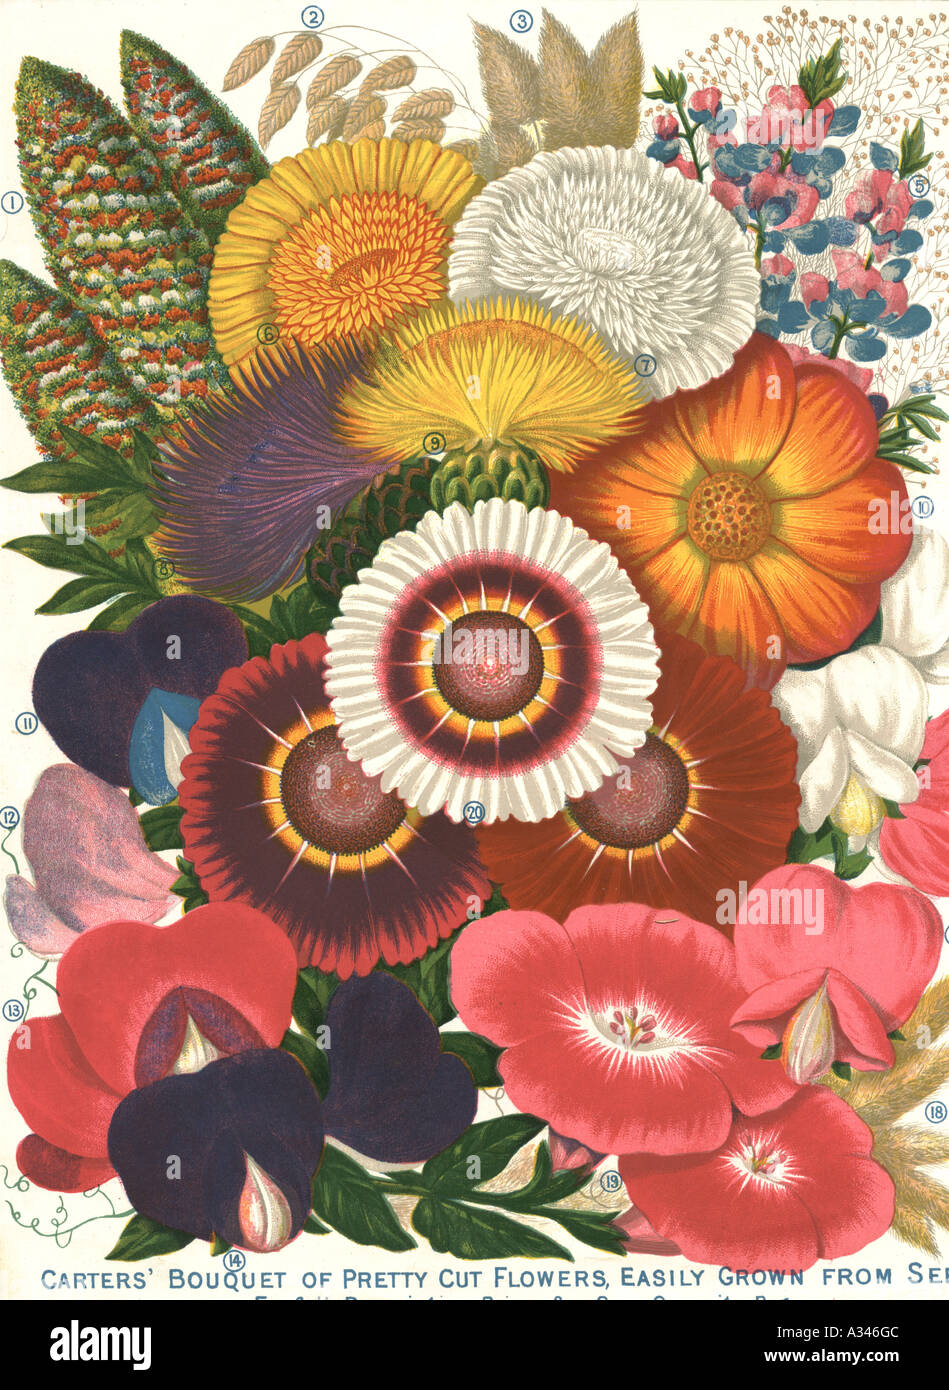 Stackers' Bouquet de jolies fleurs coupées, facilement cultivées à partir de graines 1893 Banque D'Images